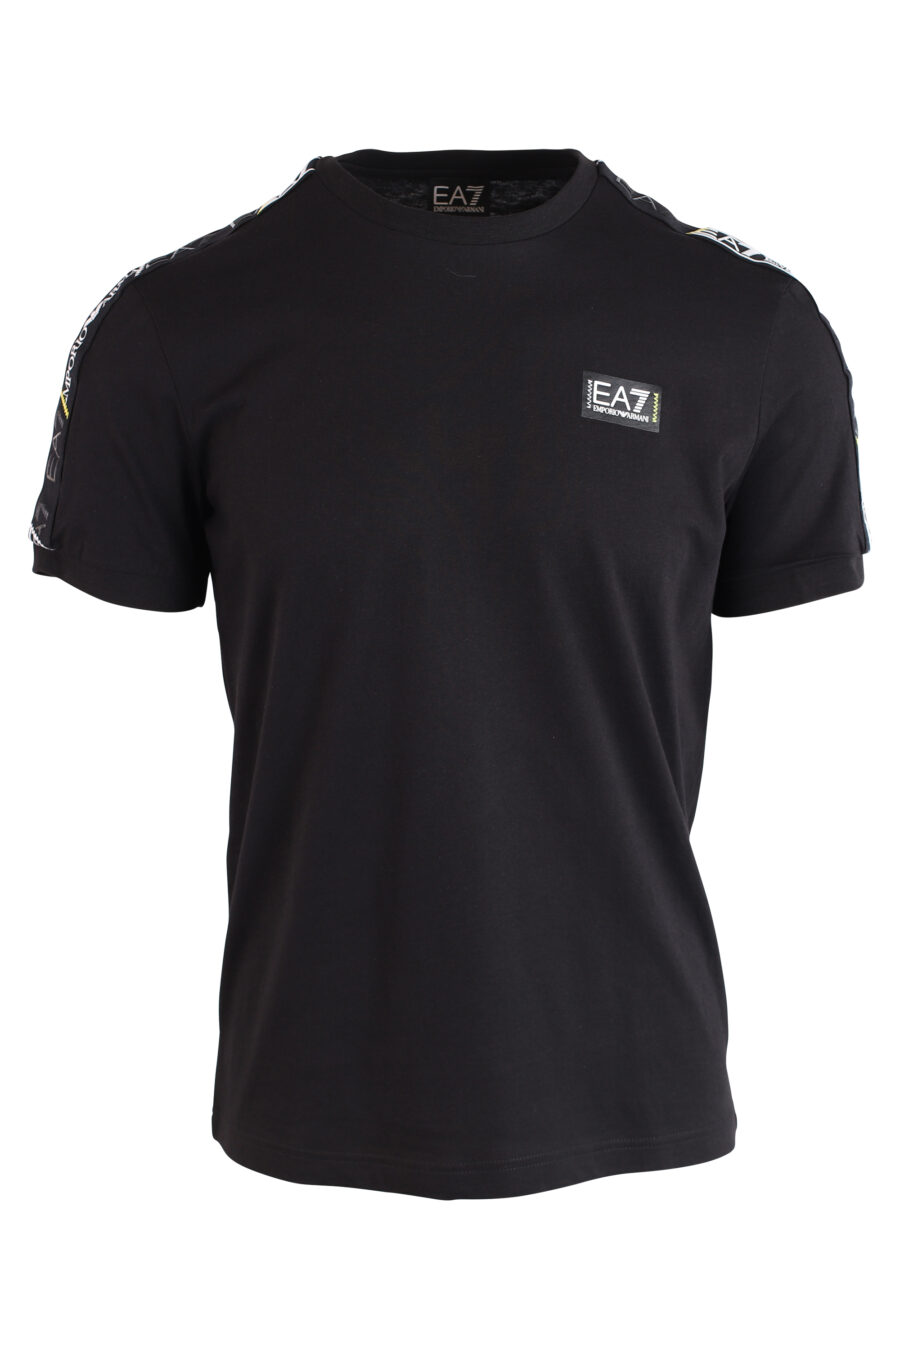 Camiseta negra con logo en cinta en hombros y minilogo blanco - IMG 3215